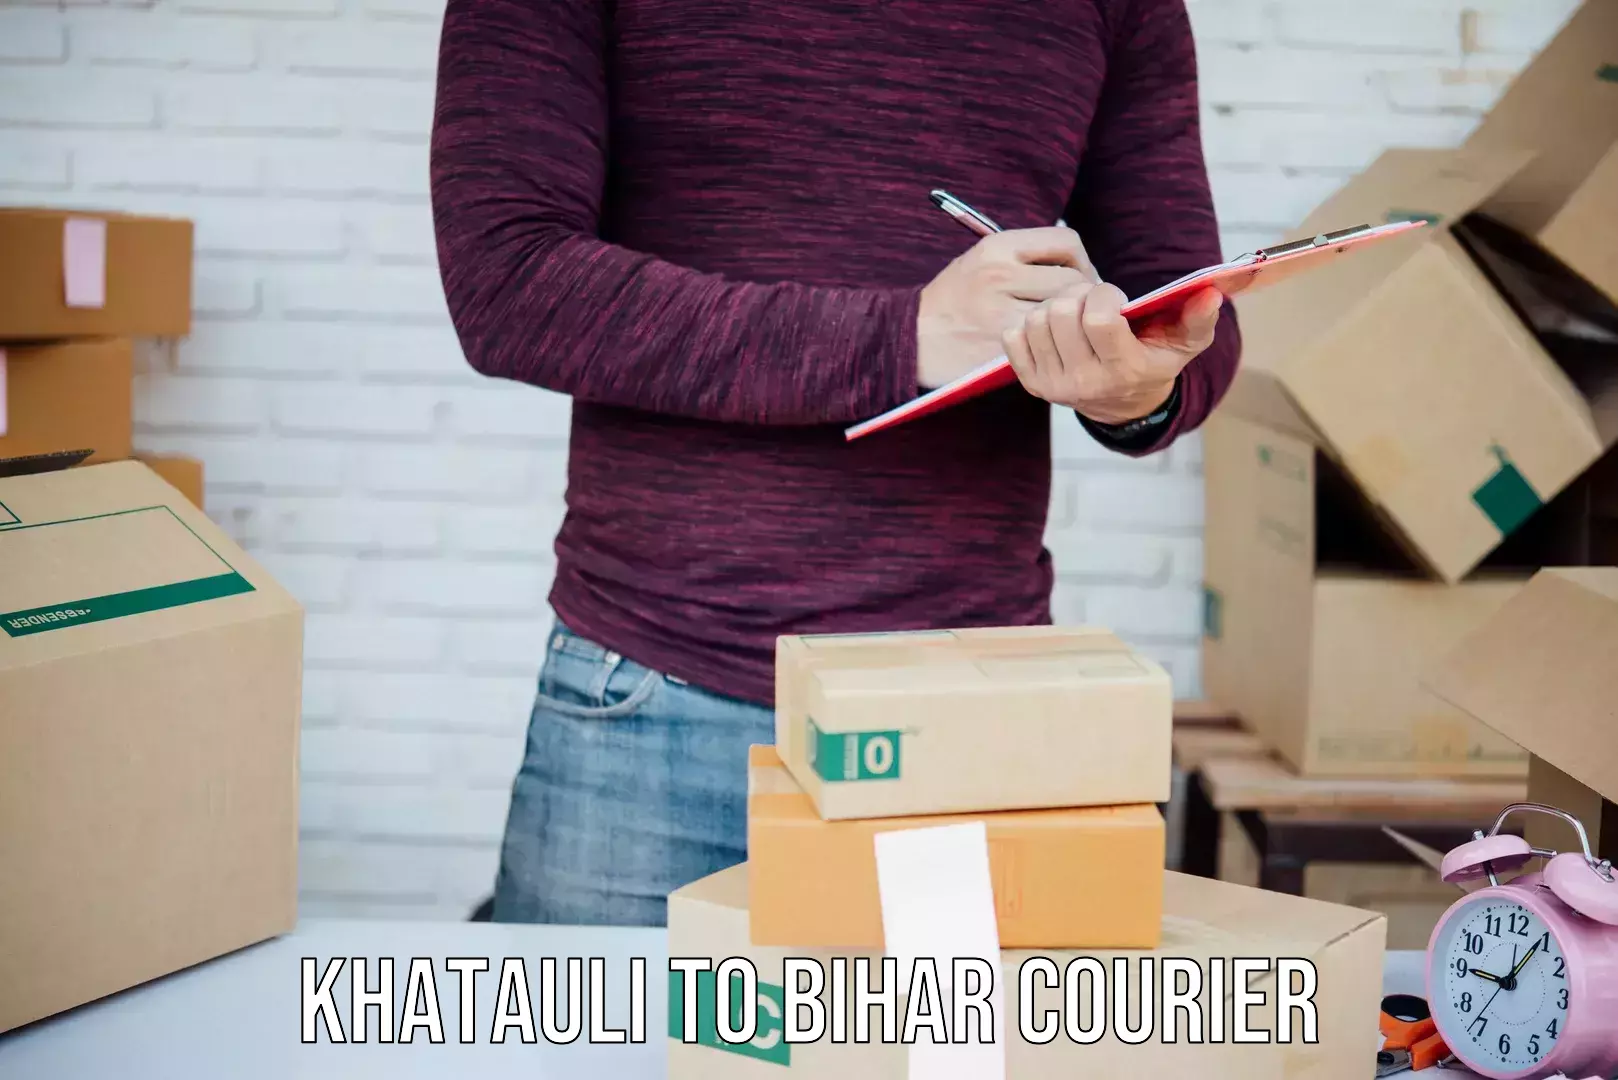 End-to-end delivery Khatauli to Aurangabad Bihar